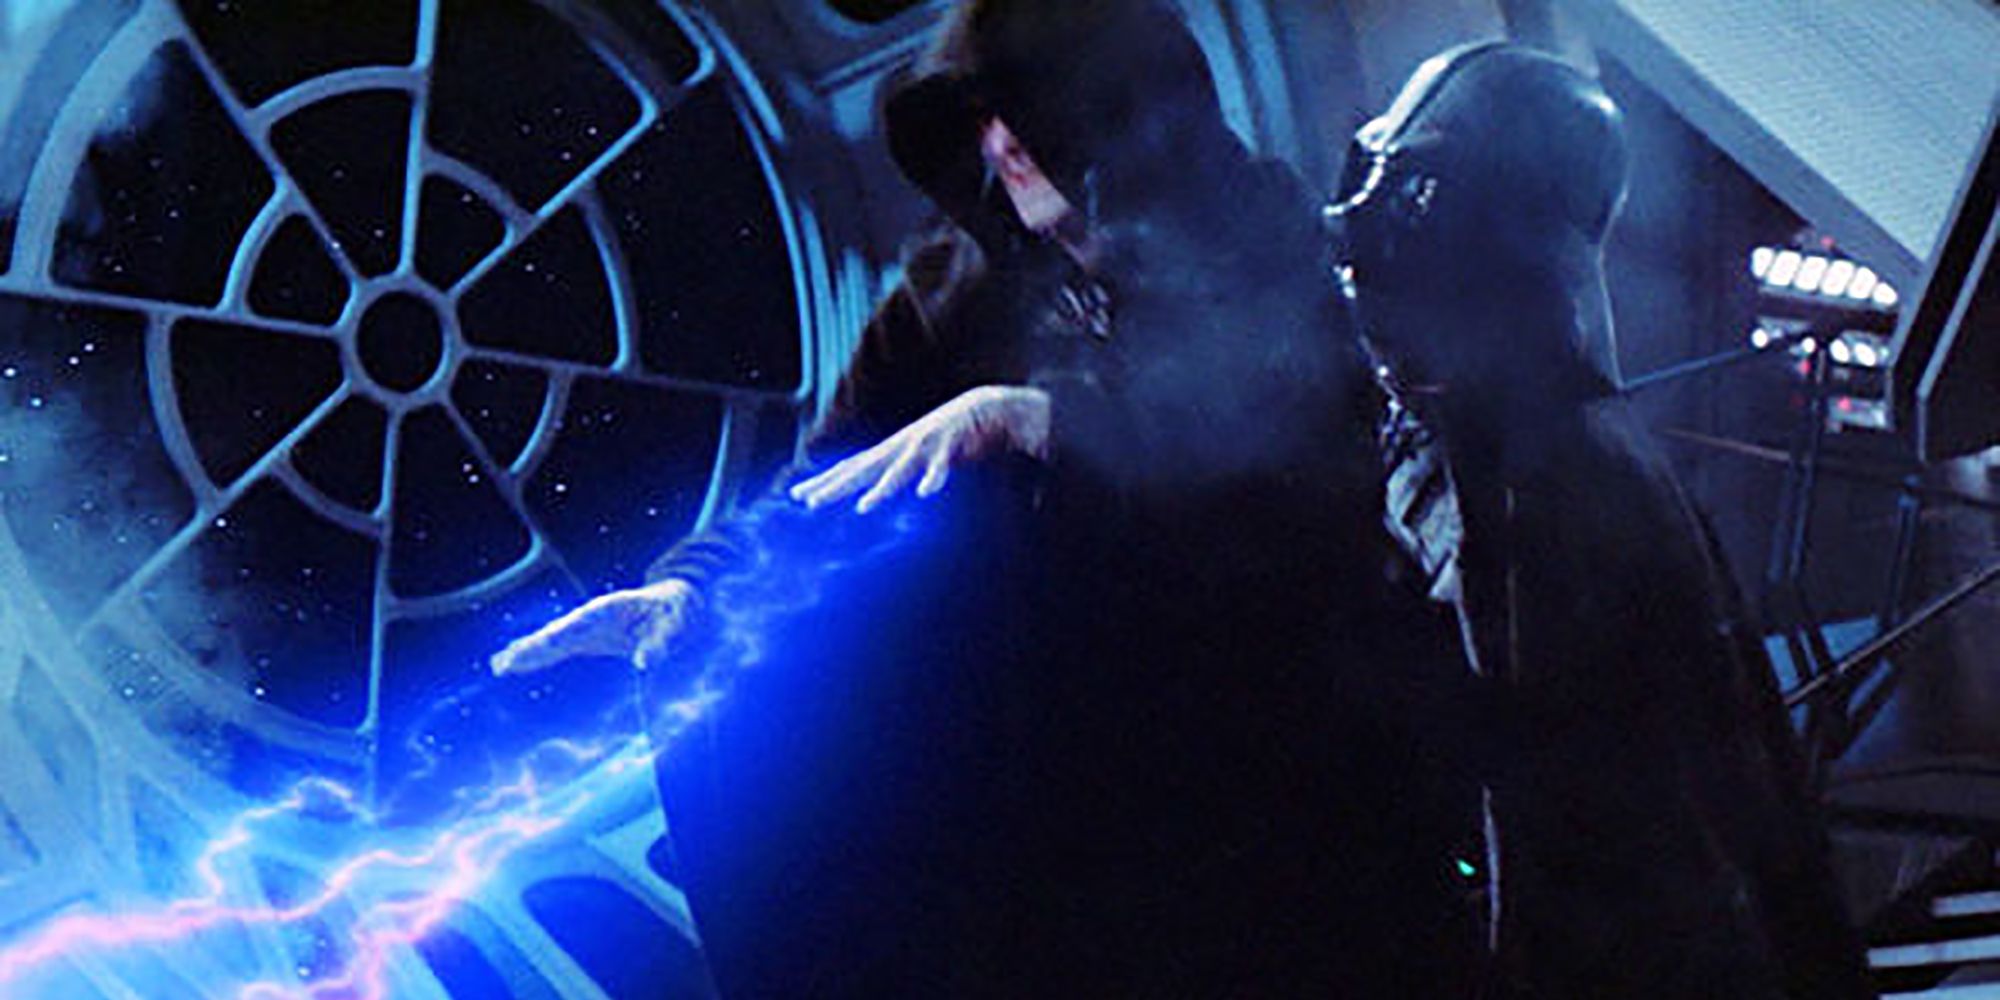 Darth Vader Killing The Emperor